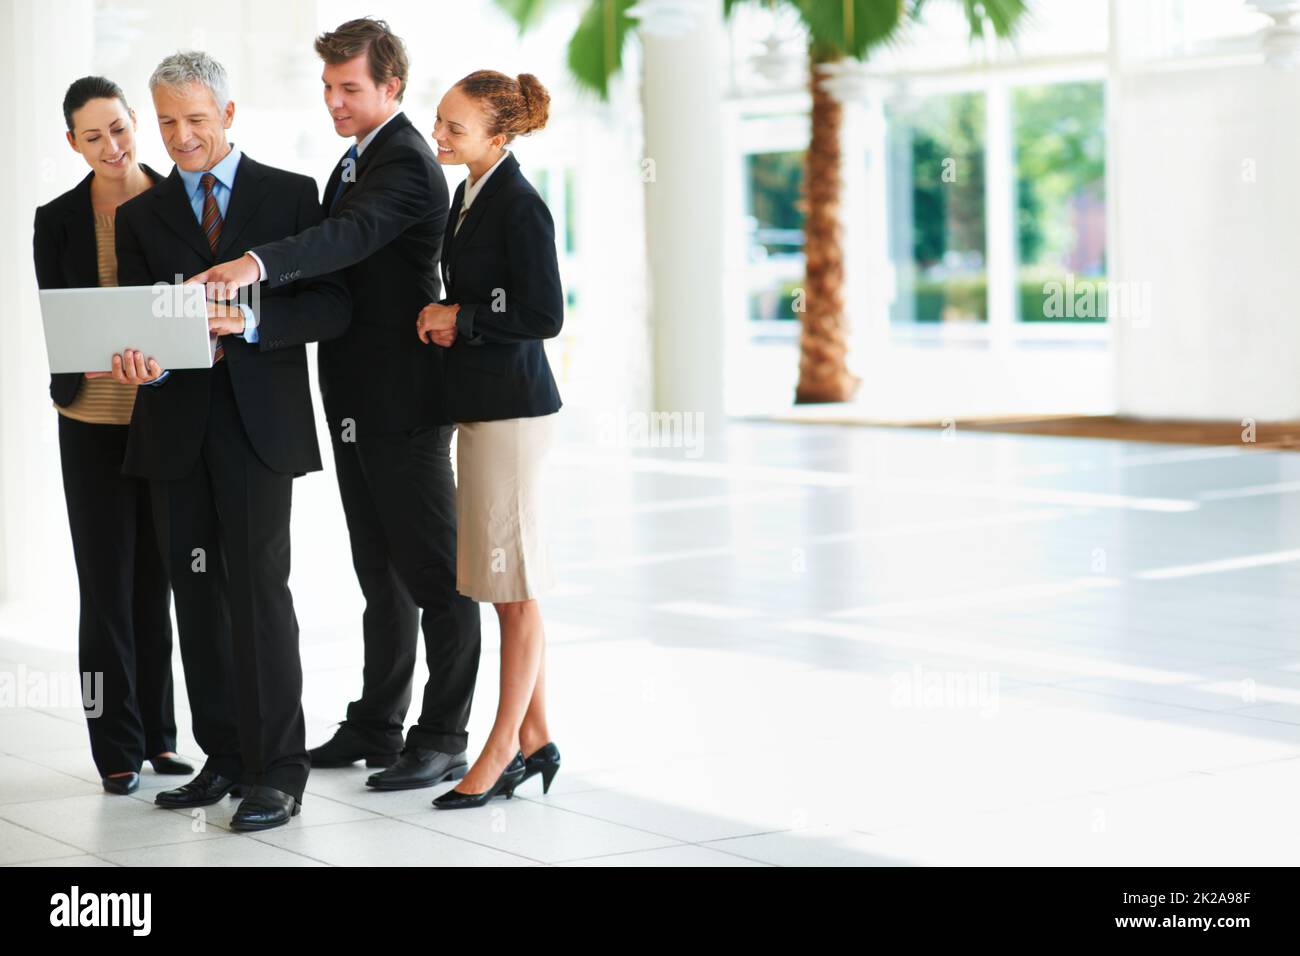 Geschäftsabläufe ermöglichen. Aufnahme einer Gruppe von Geschäftsleuten, die über einen Laptop reden, während sie in einer Bürolobby stehen. Stockfoto